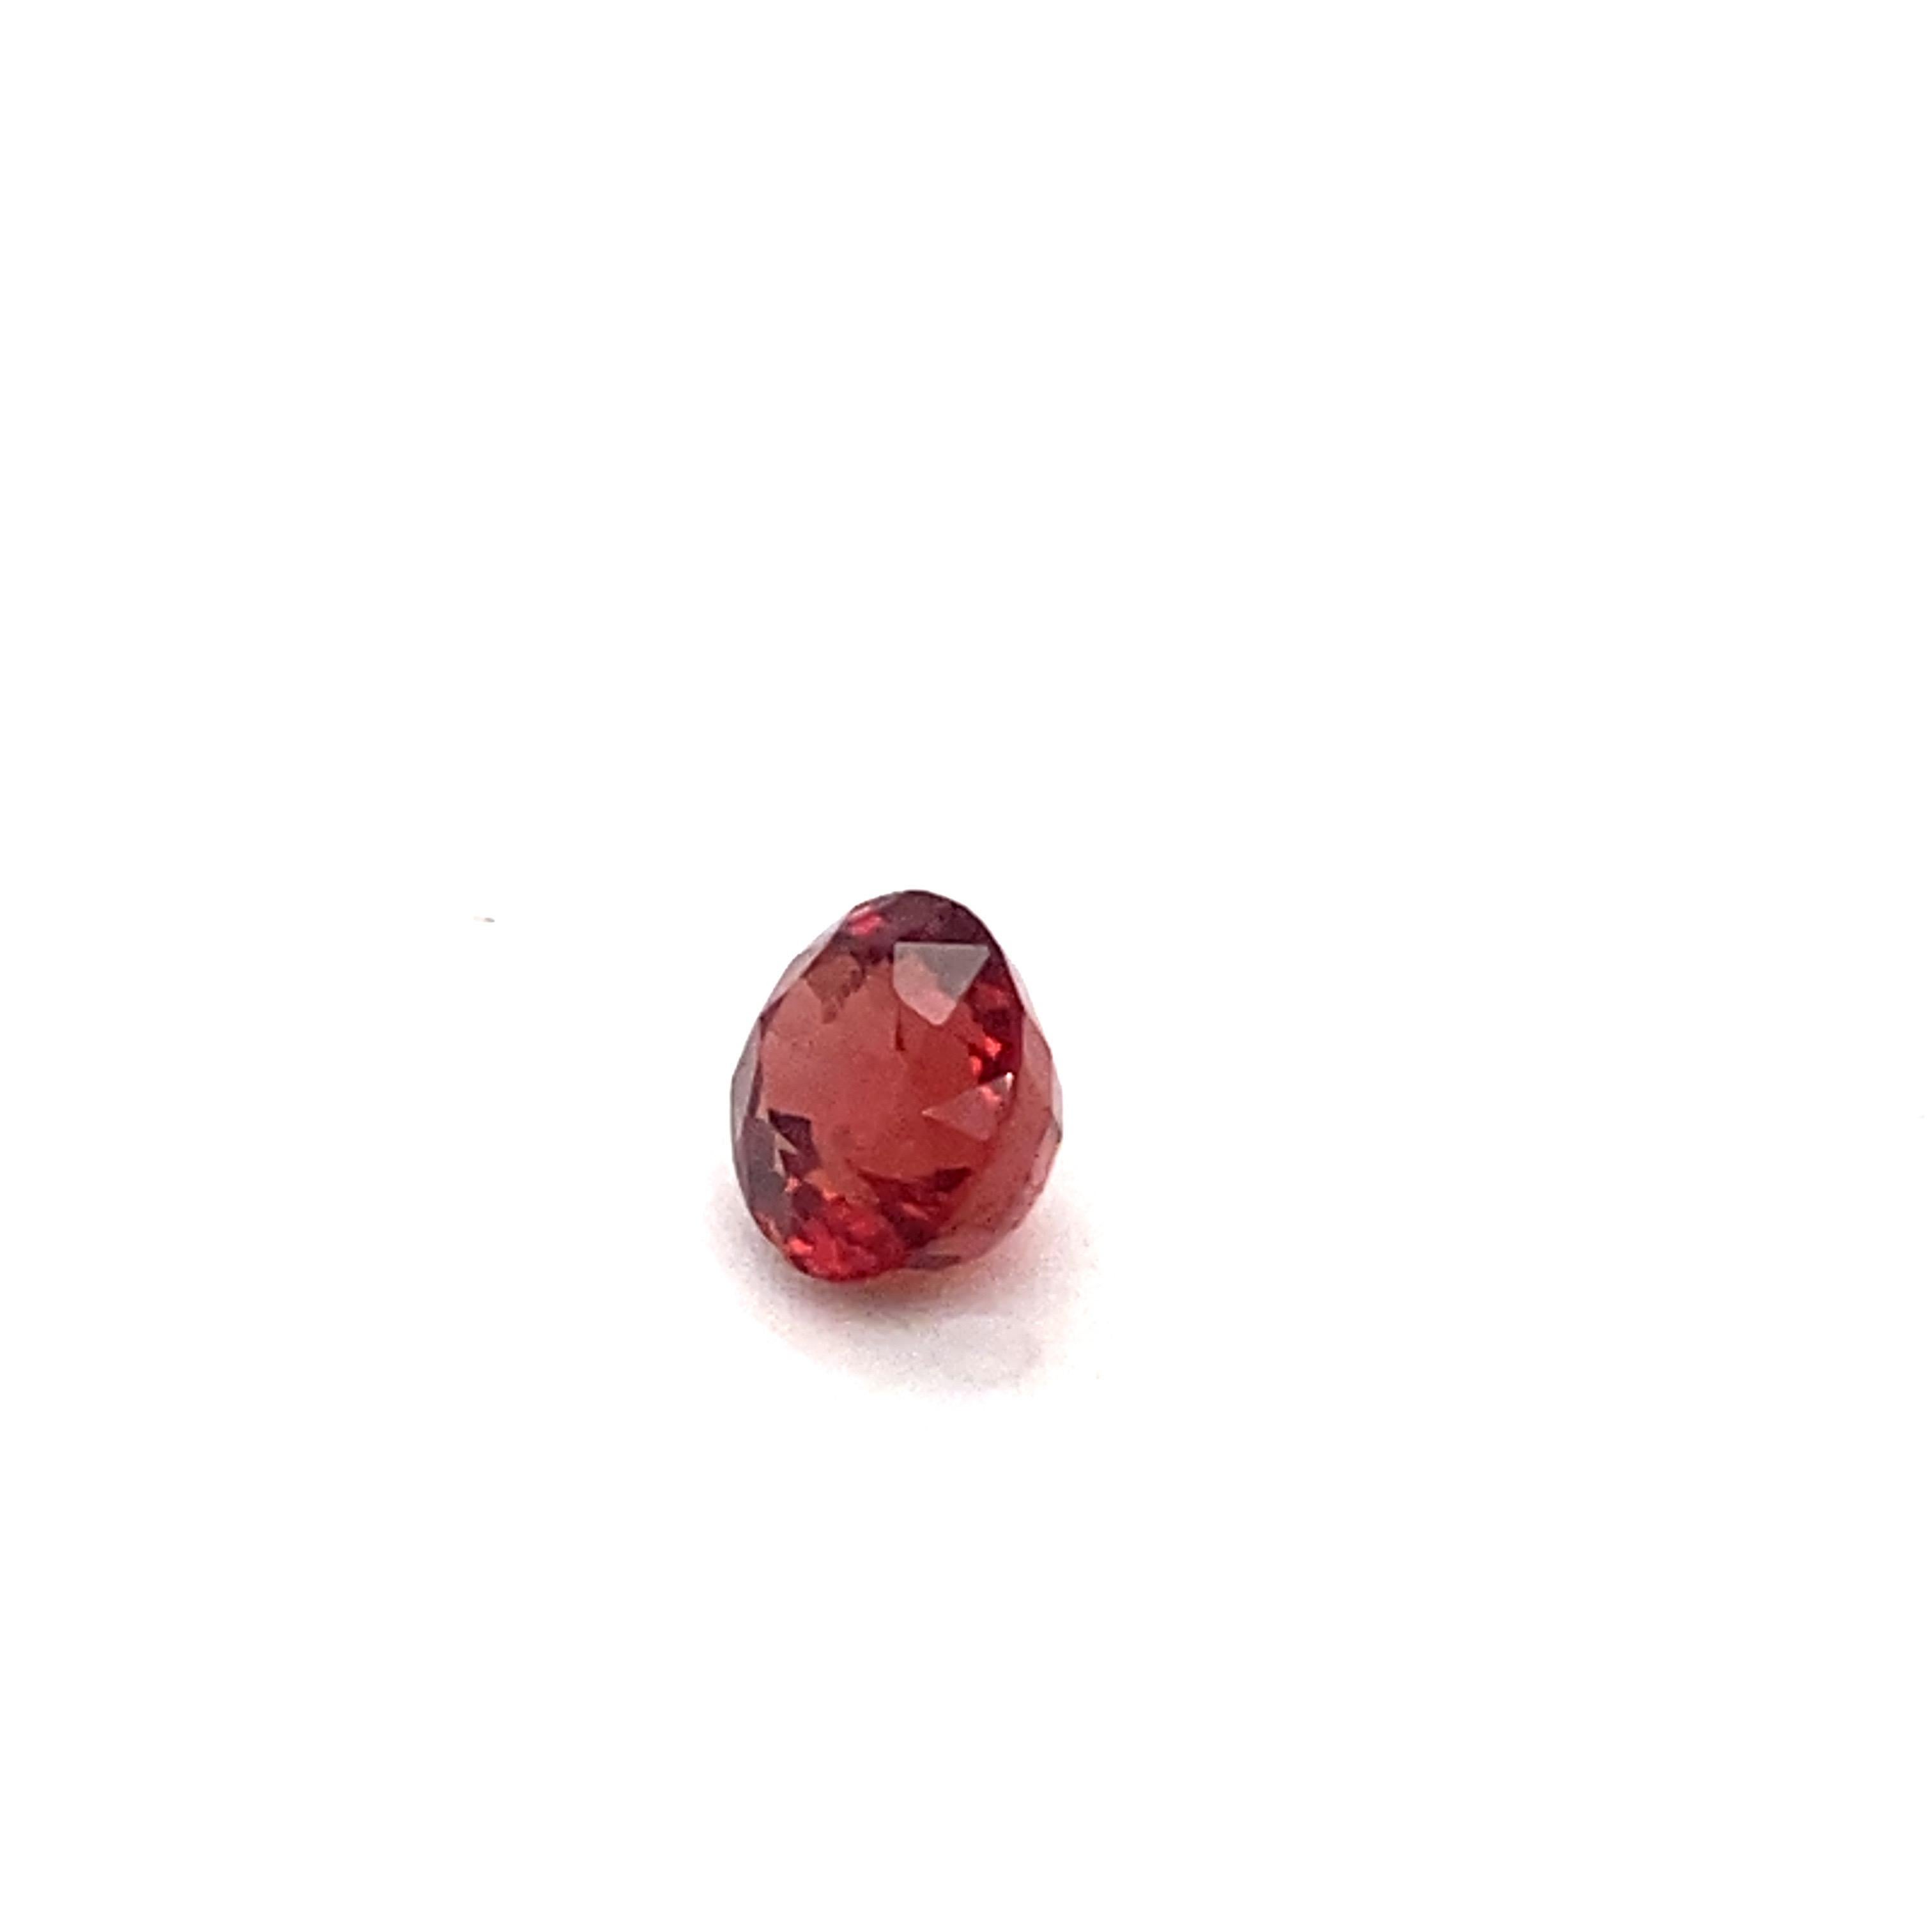 2.25 Carat Oval Shape Natural Red Spinel Loose Gemstone  9